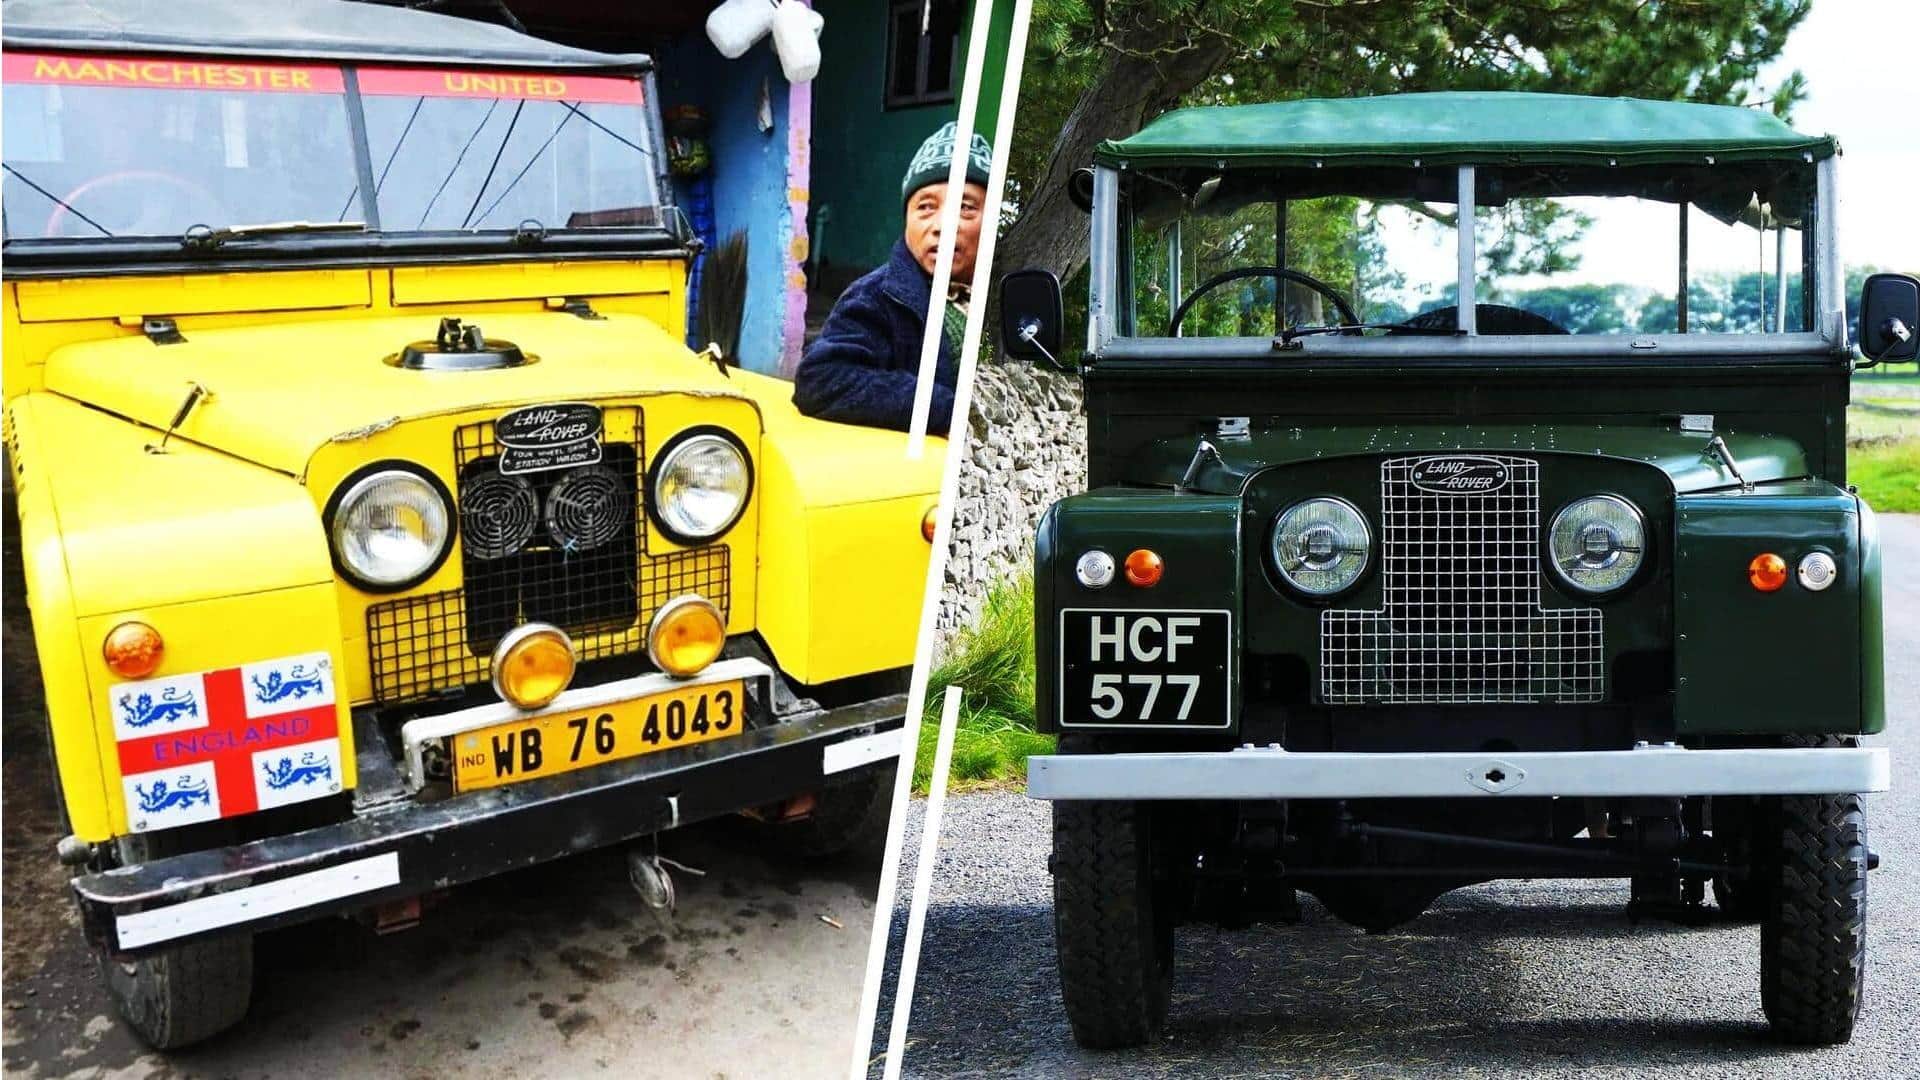 Kota kecil di Darjeeling ini memiliki beberapa Land Rover klasik